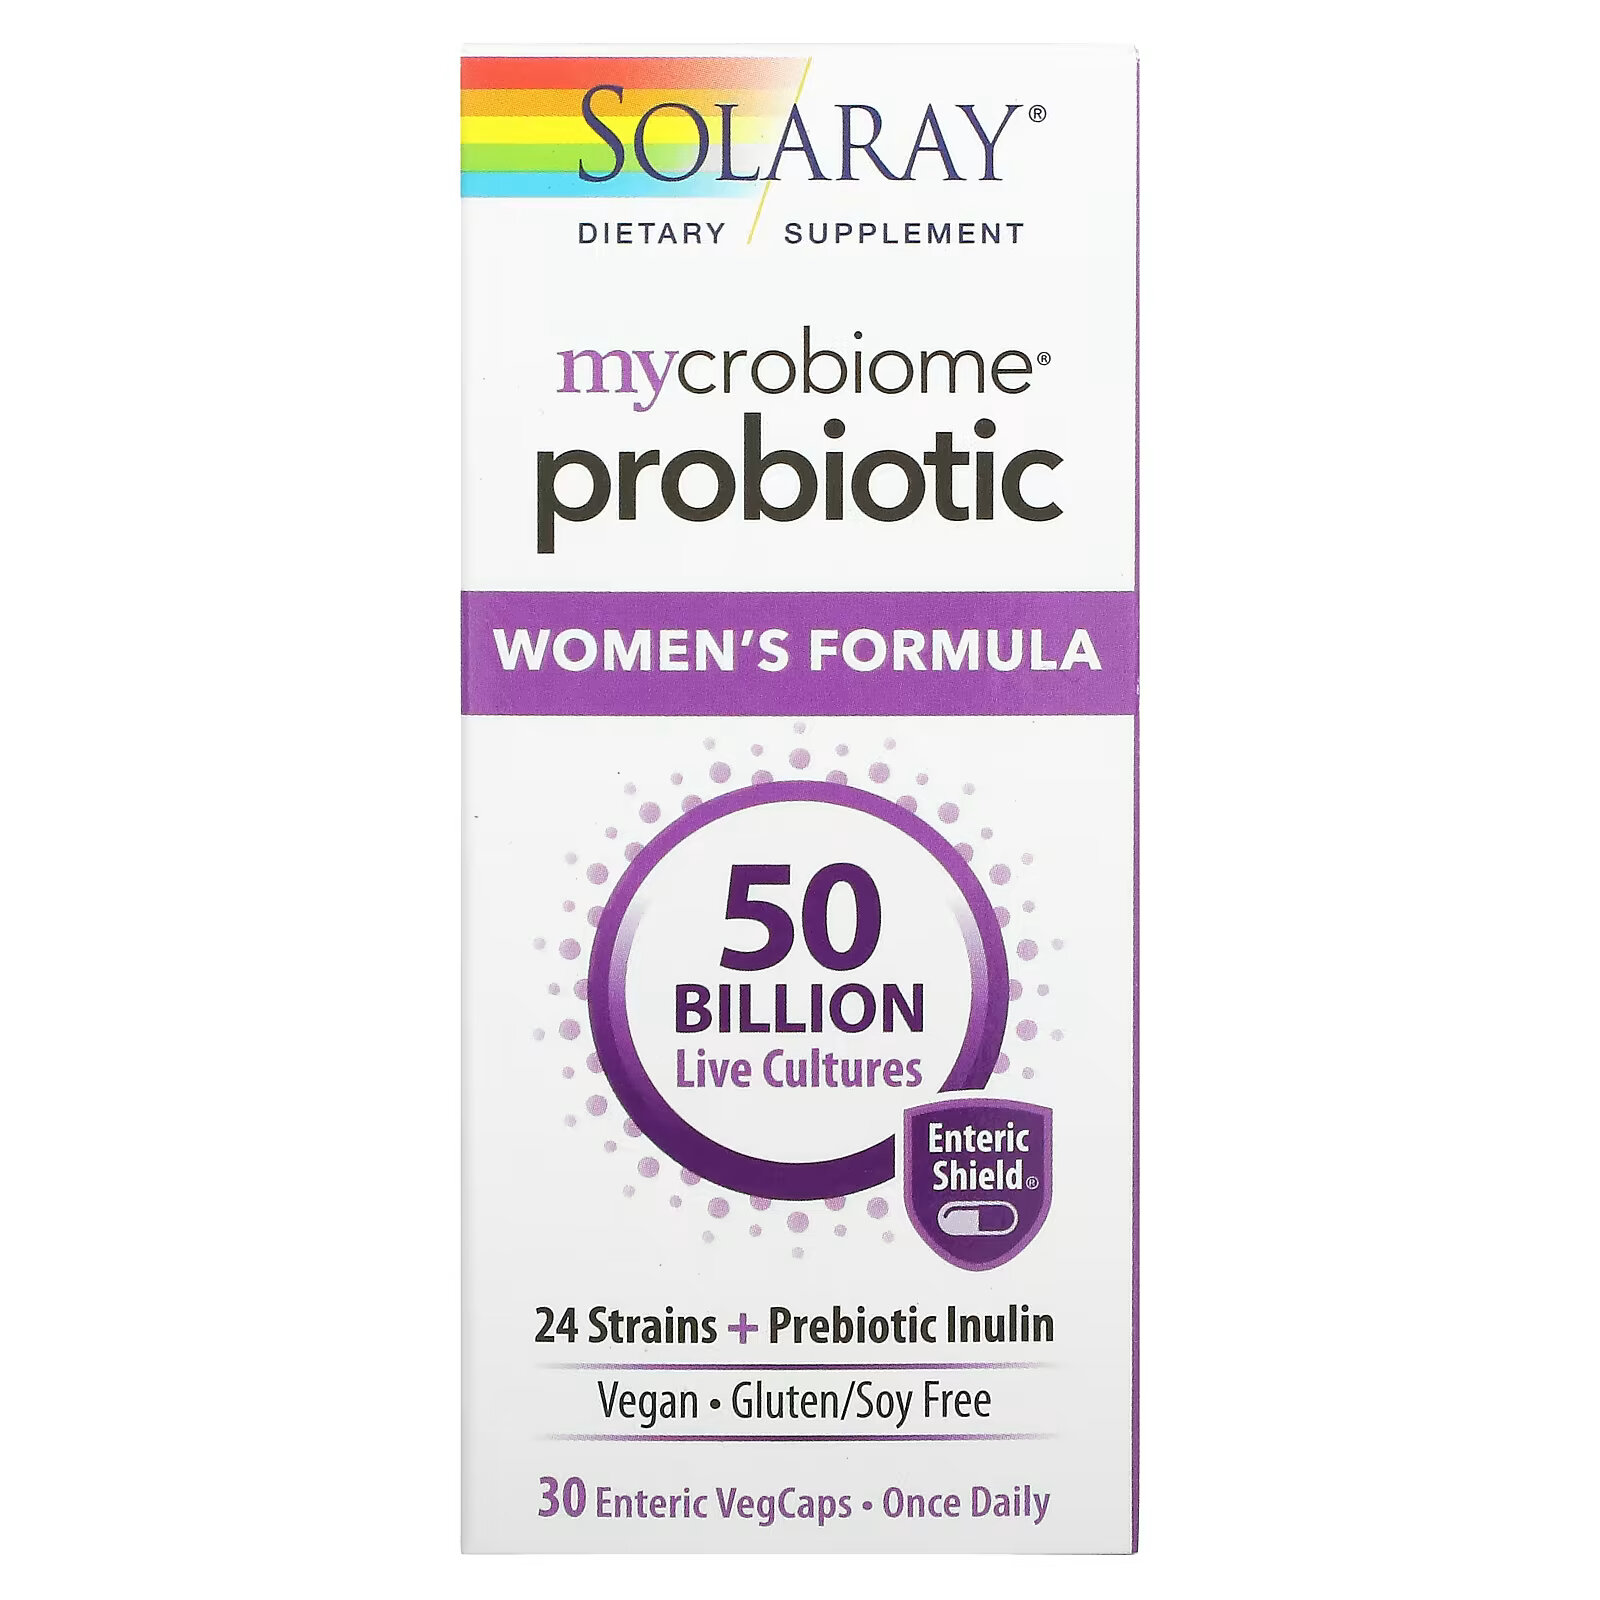 solaray mycrobiome probiotic weight formula 50 млрд 30 капсул с кишечным растительным экстрактом Solaray, пробиотик Mycrobiome для женщин, 50 млрд живых культур, 30 вегетарианских капсул, покрытых кишечнорастворимой оболочкой